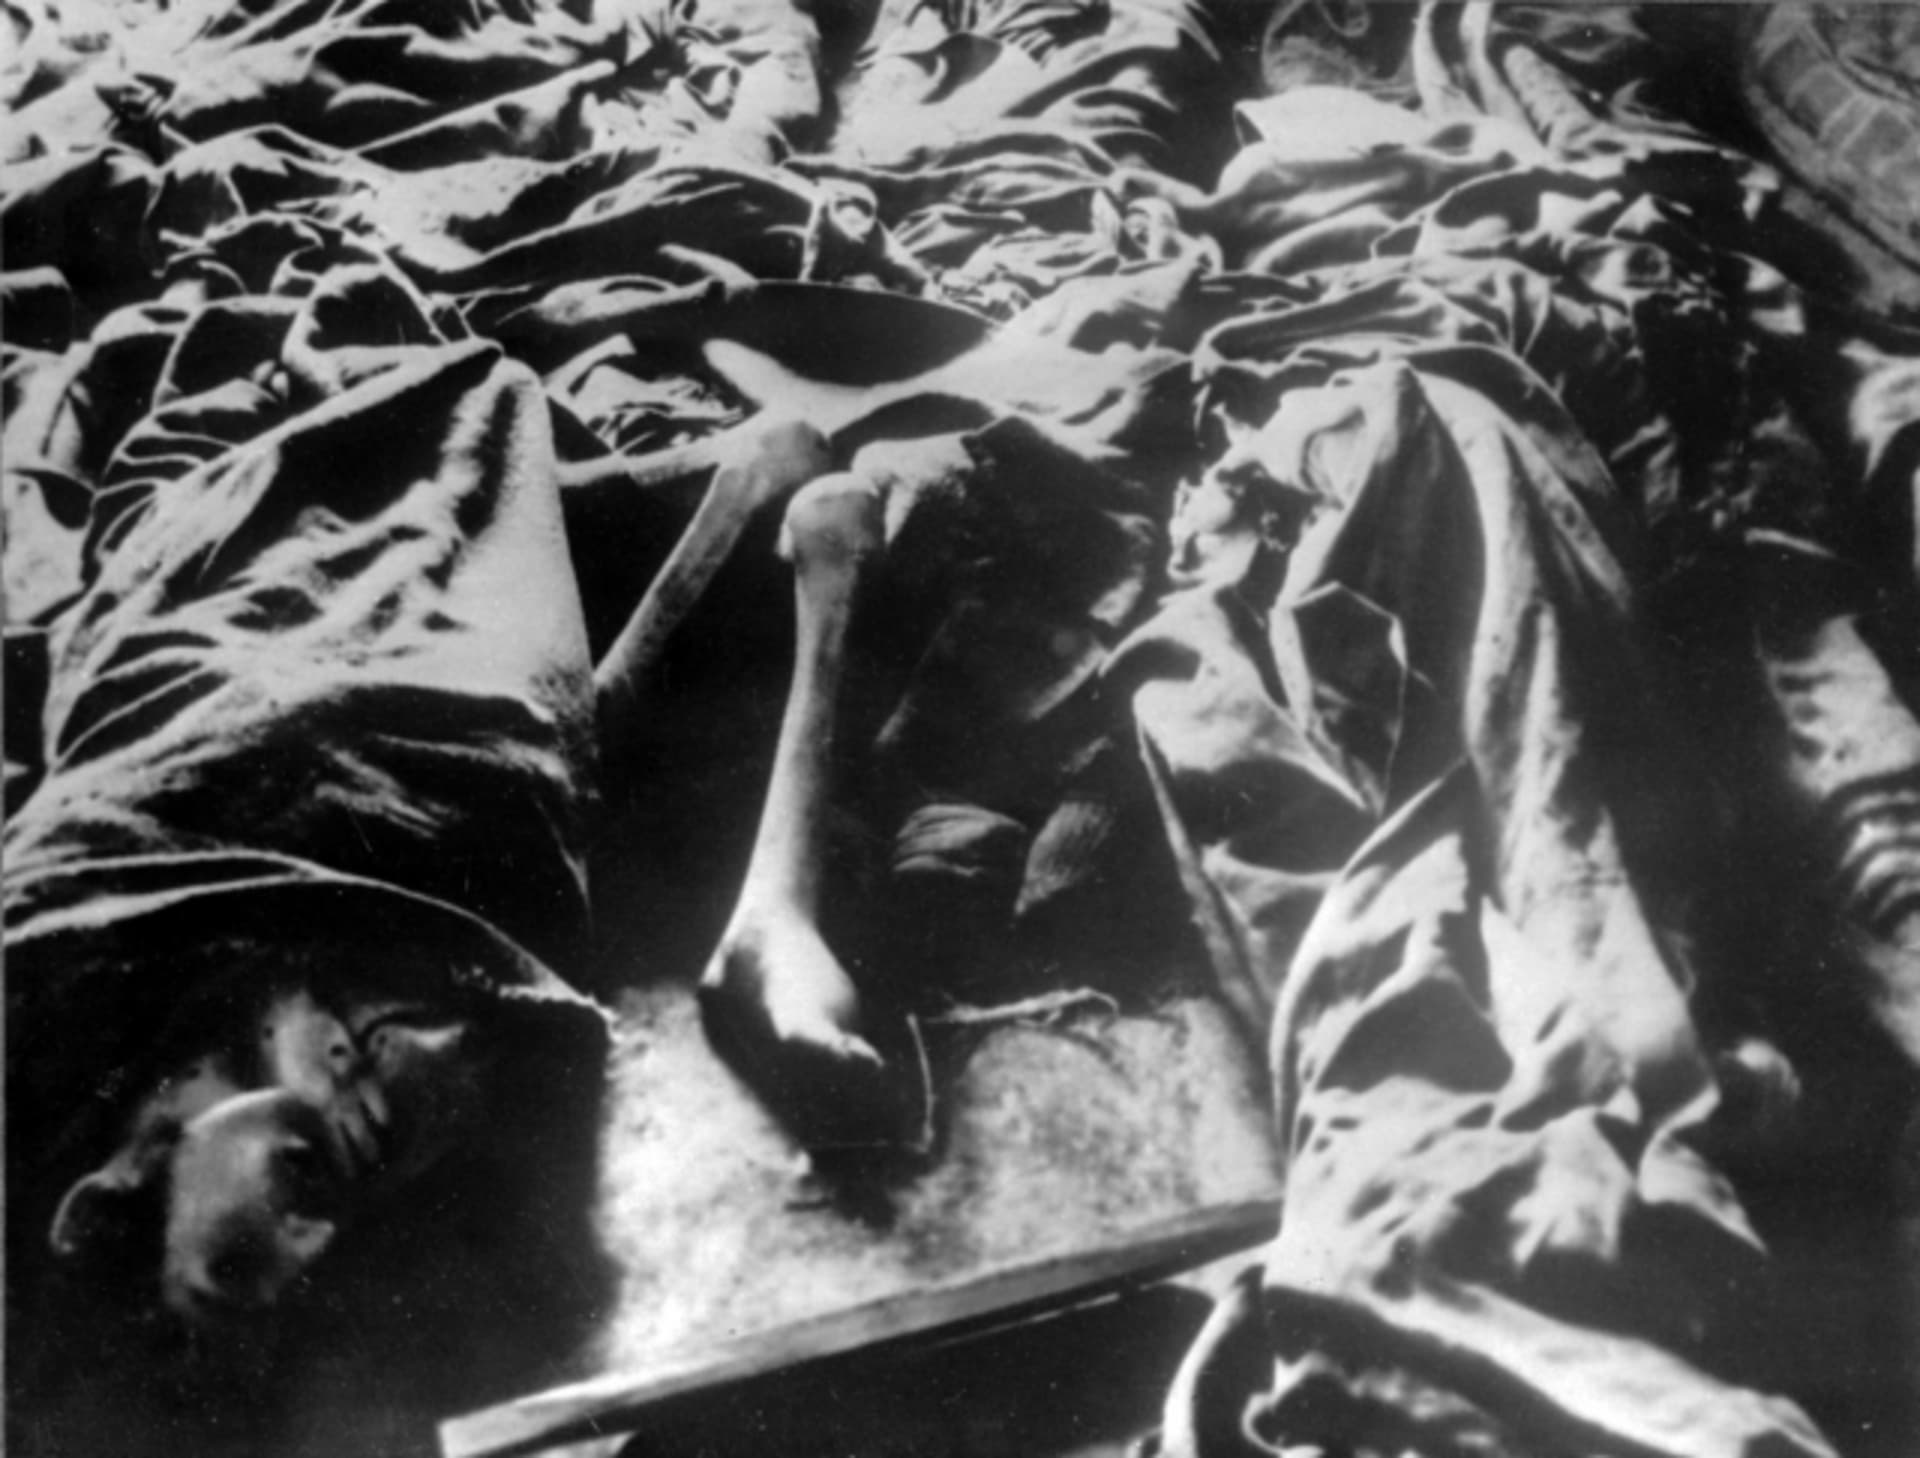 Oběti koncentračního a vyhlazovacího tábora světim-Birkenau